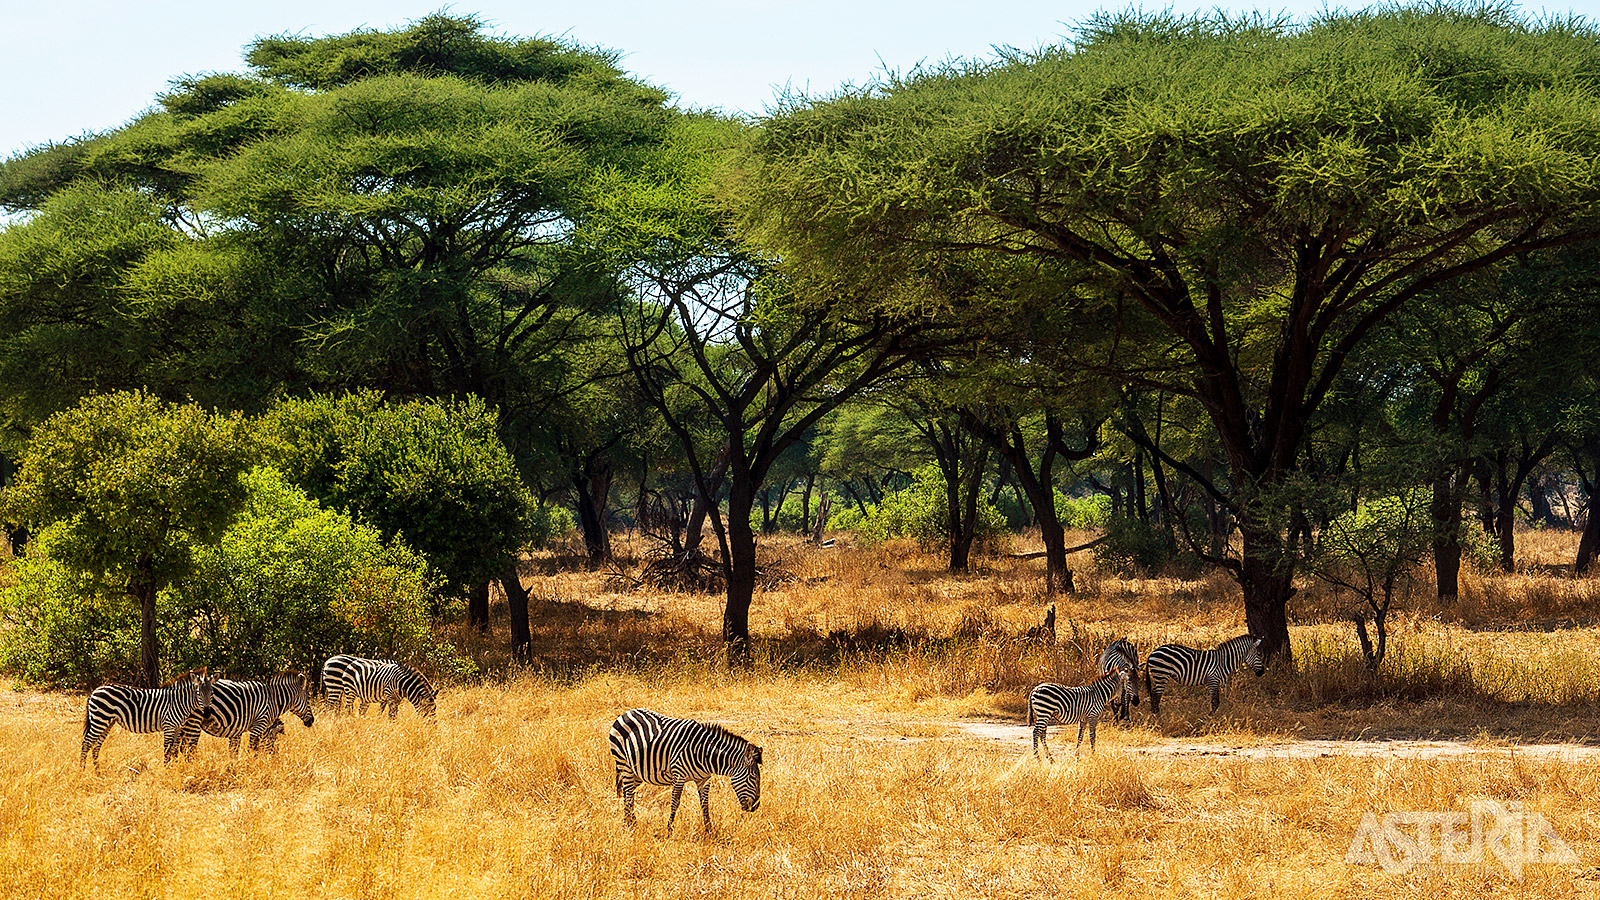 Het zuiden van Tanzania wordt veel minder bezocht dan de populaire safariparken in het noorden